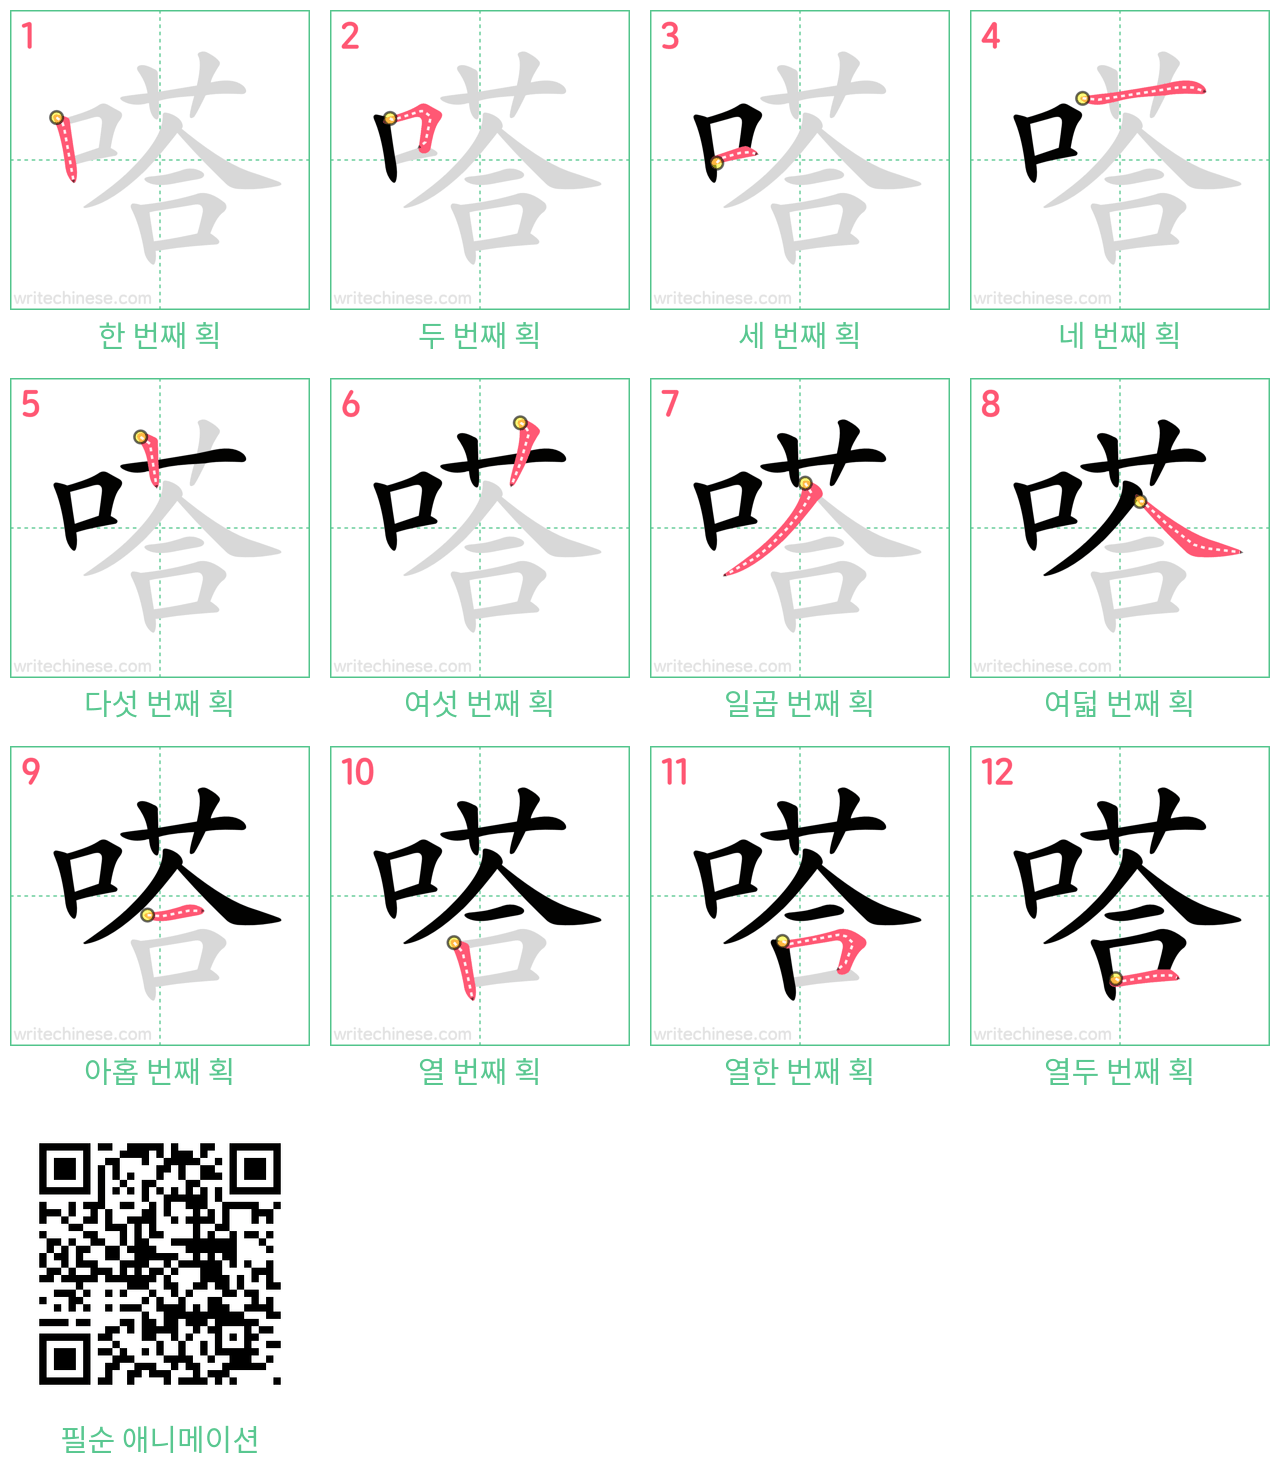 嗒 step-by-step stroke order diagrams